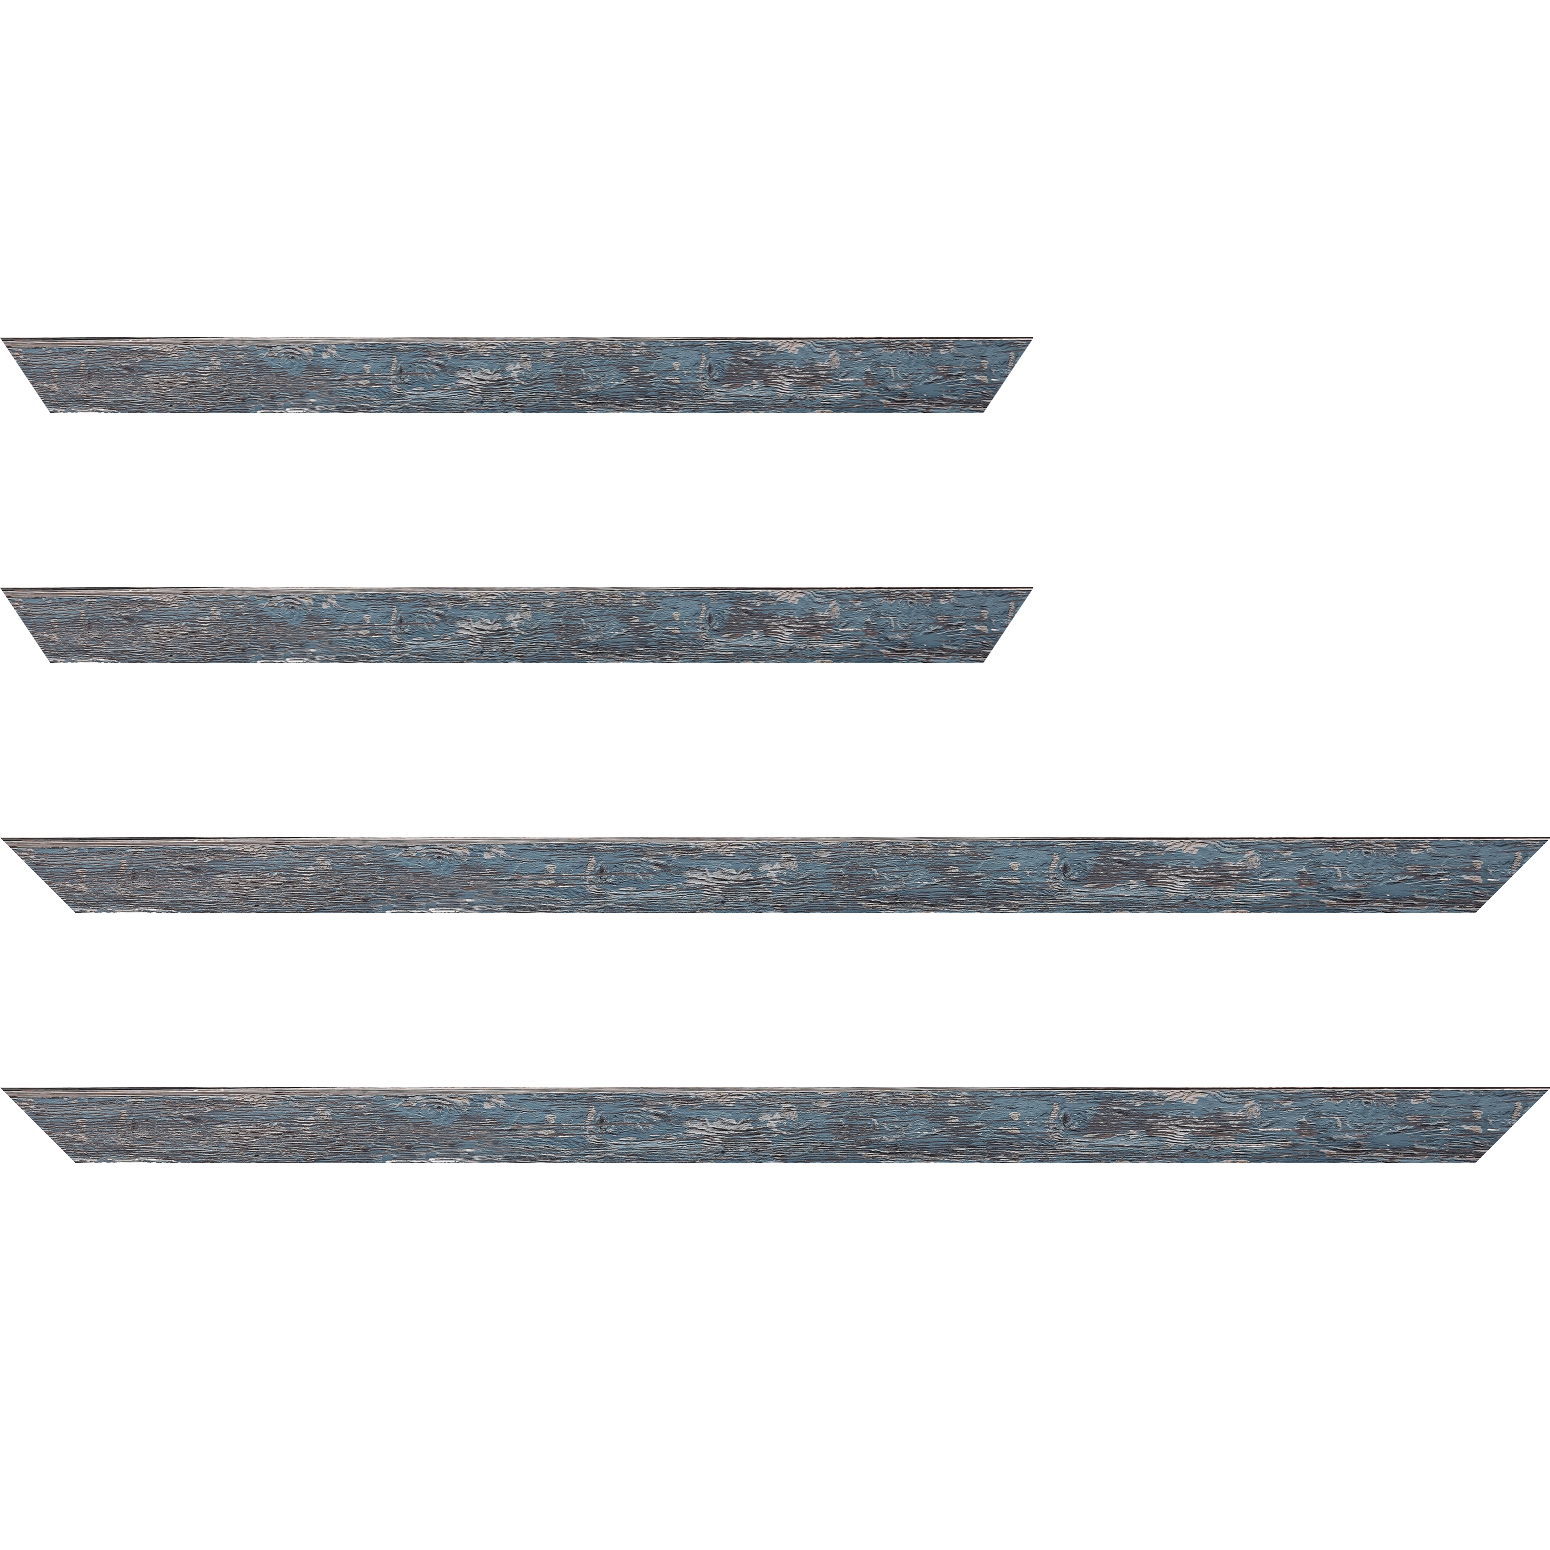 Baguette bois profil arrondi en pente plongeant largeur 2.4cm couleur bleu pétrole finition veinée, reflet argenté - 59.4x84.1